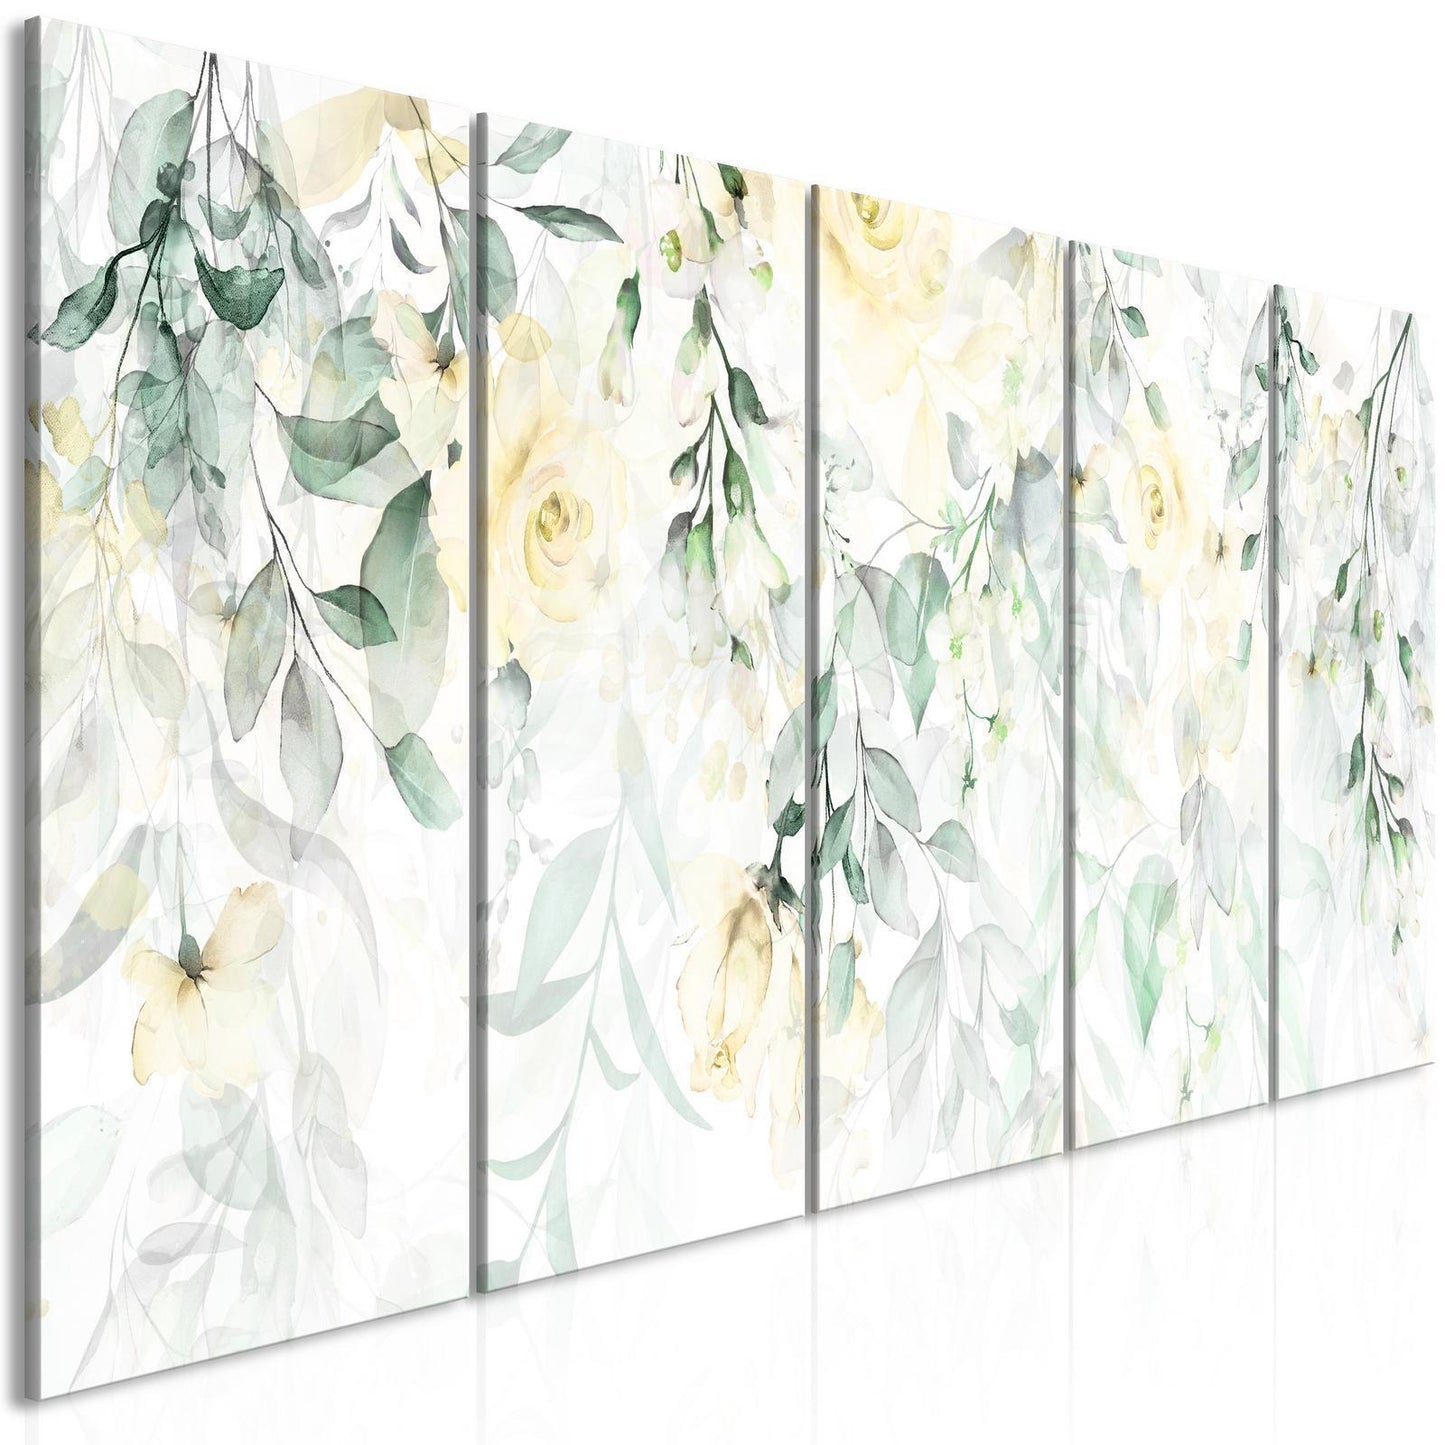 Gemälde - Wasserfall aus Rosen (5 Teile) Schmal - Zweite Variante